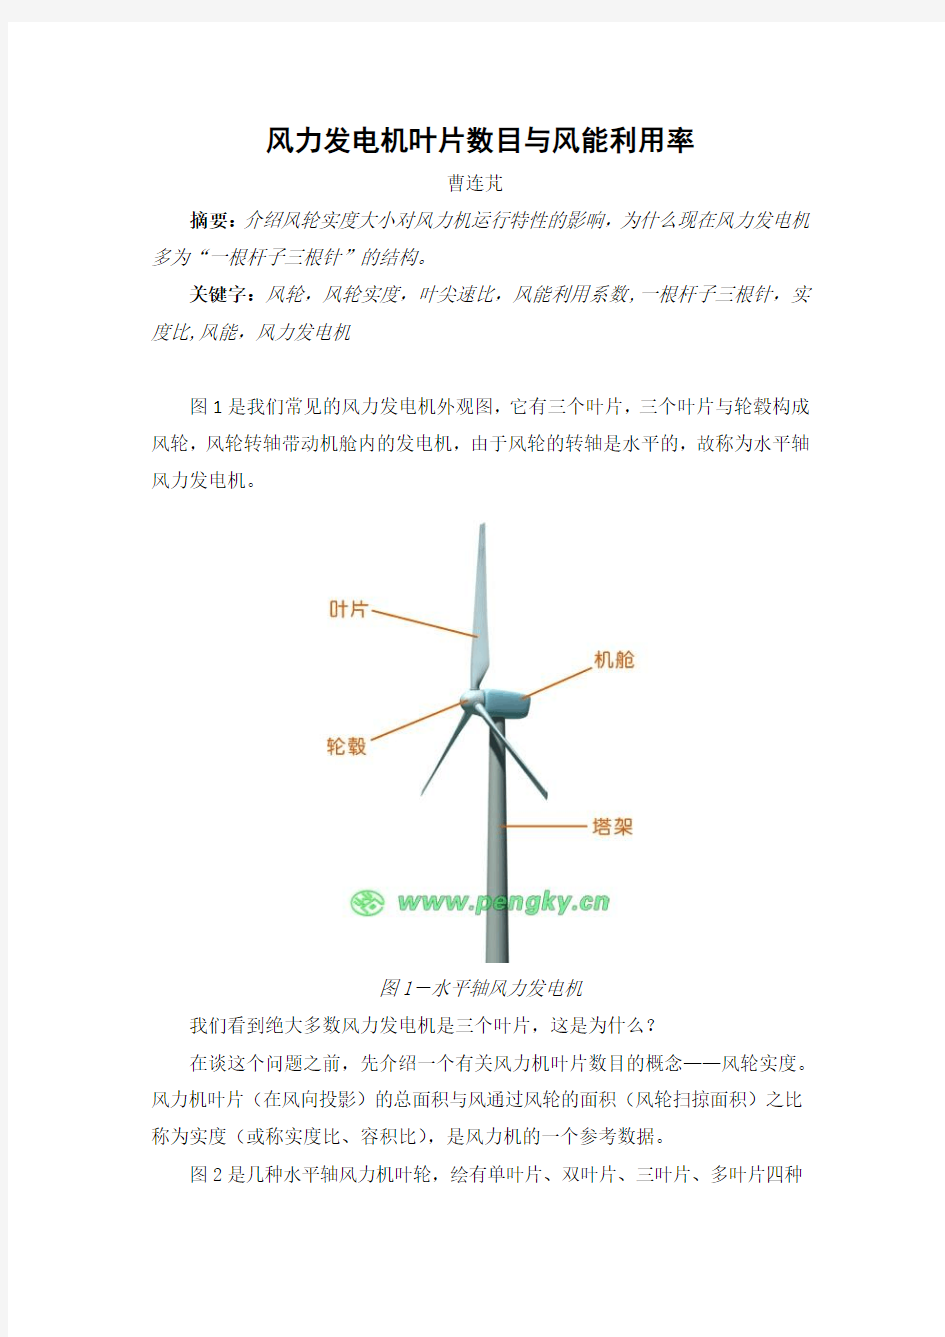 风力发电机叶片数目与风能利用率